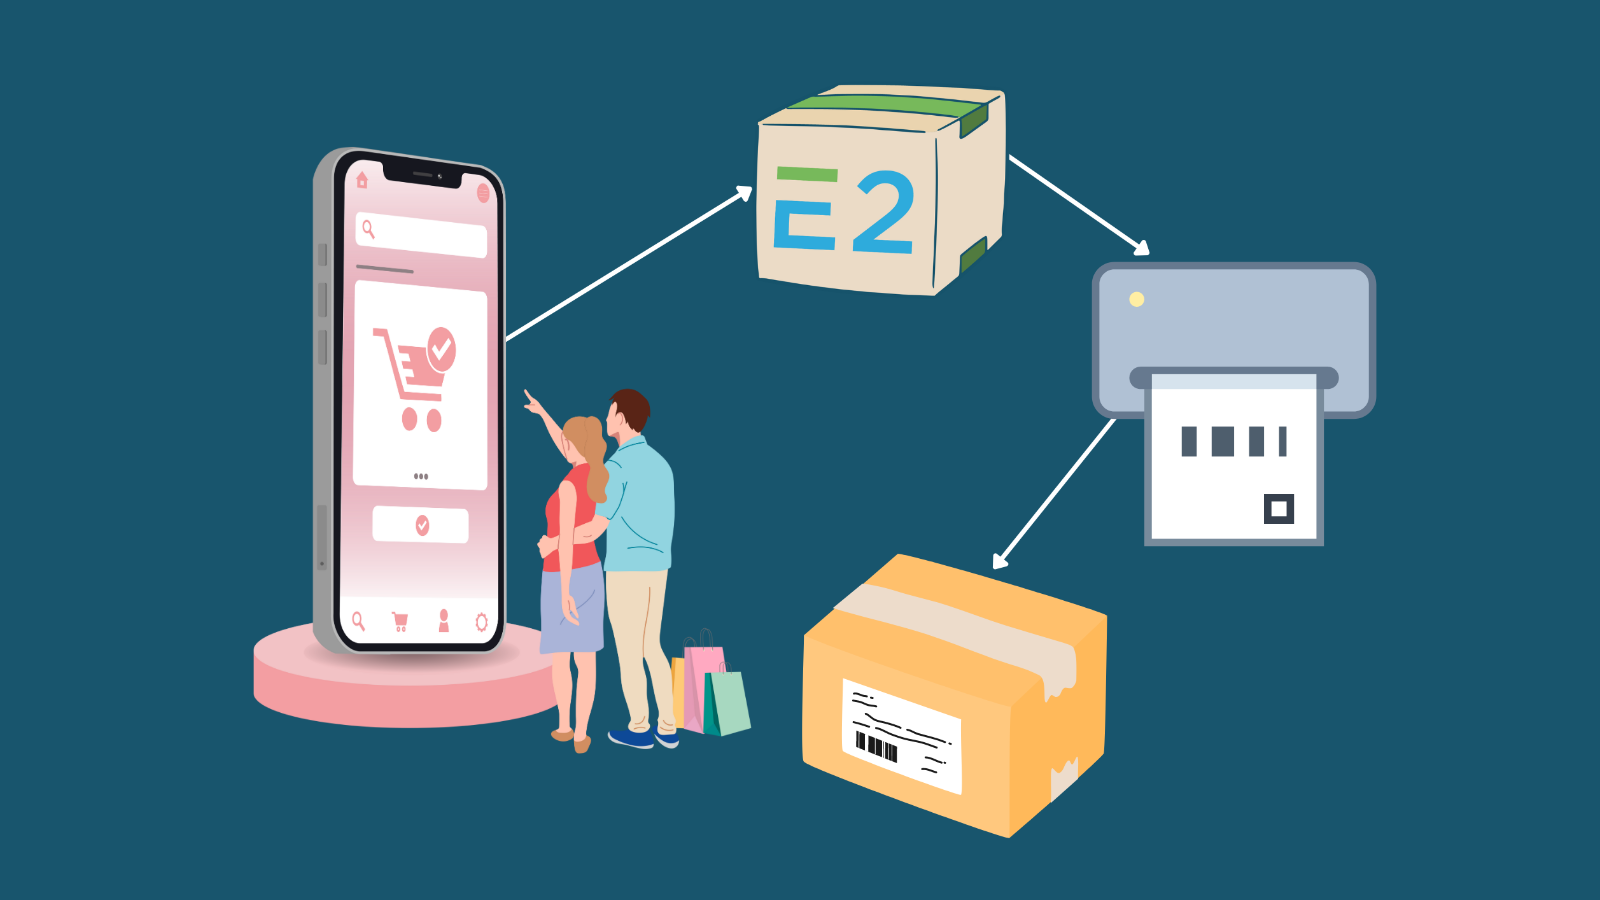 Imagen que muestra un teléfono, el logo E2, una impresora y una caja de paquete